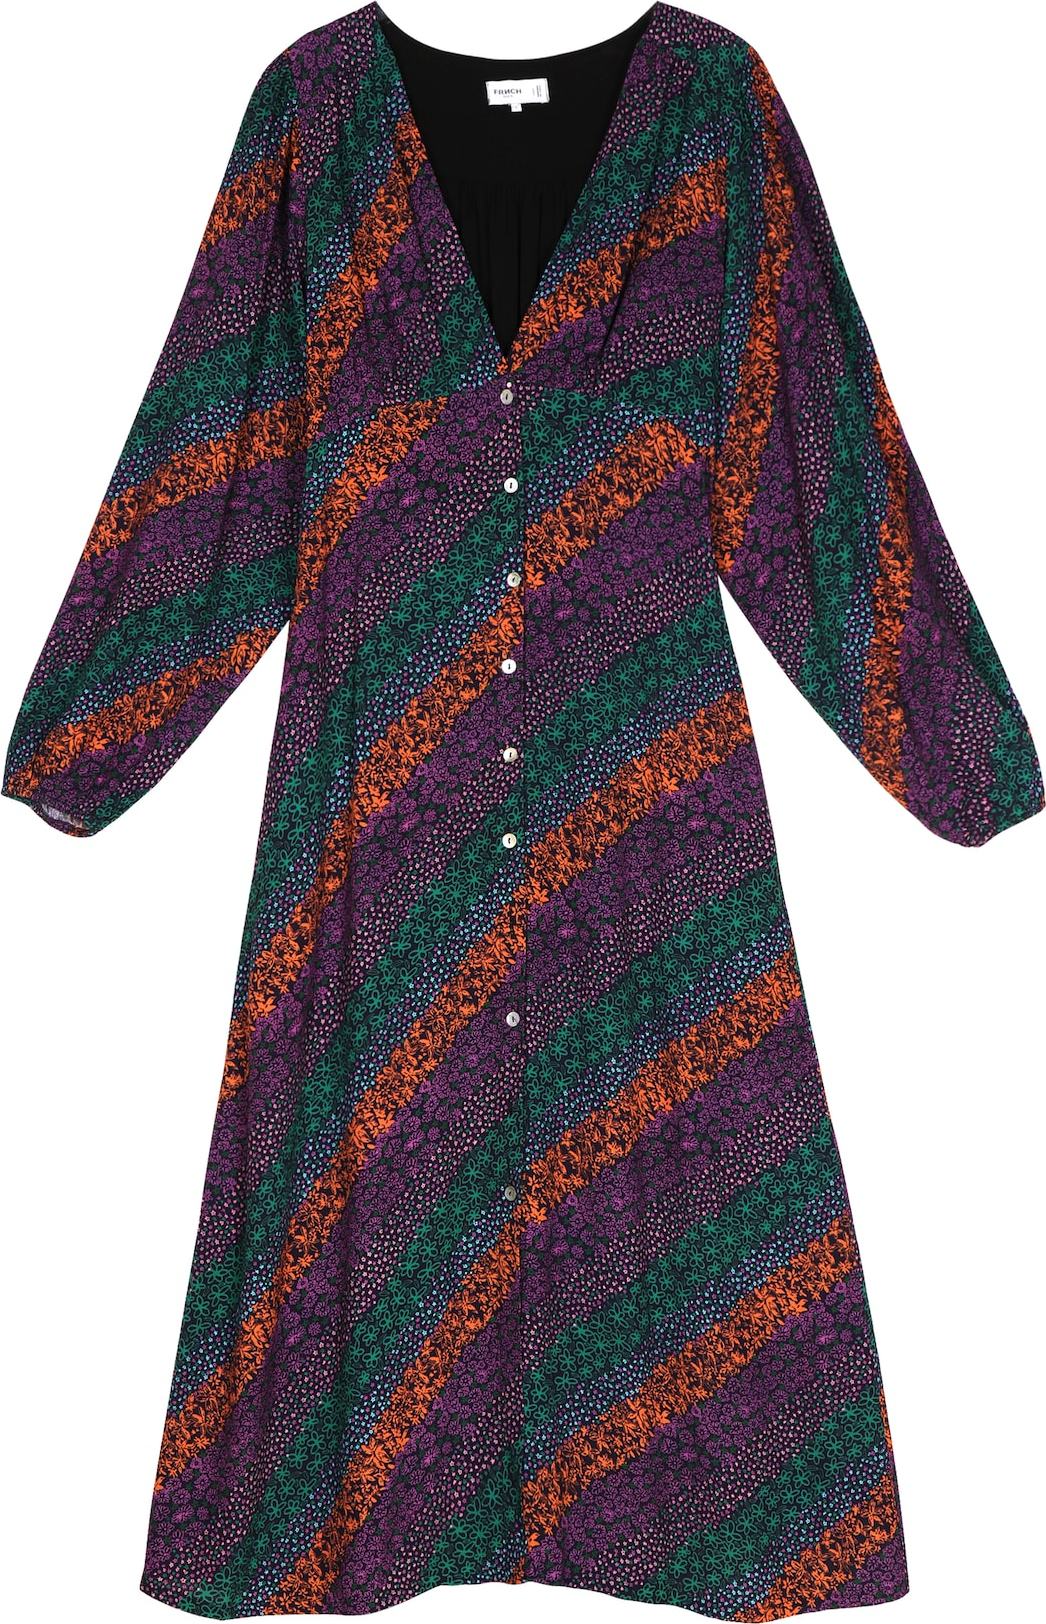 FRNCH PARIS Košilové šaty 'Holy' smaragdová / tmavě fialová / tmavě oranžová / černá